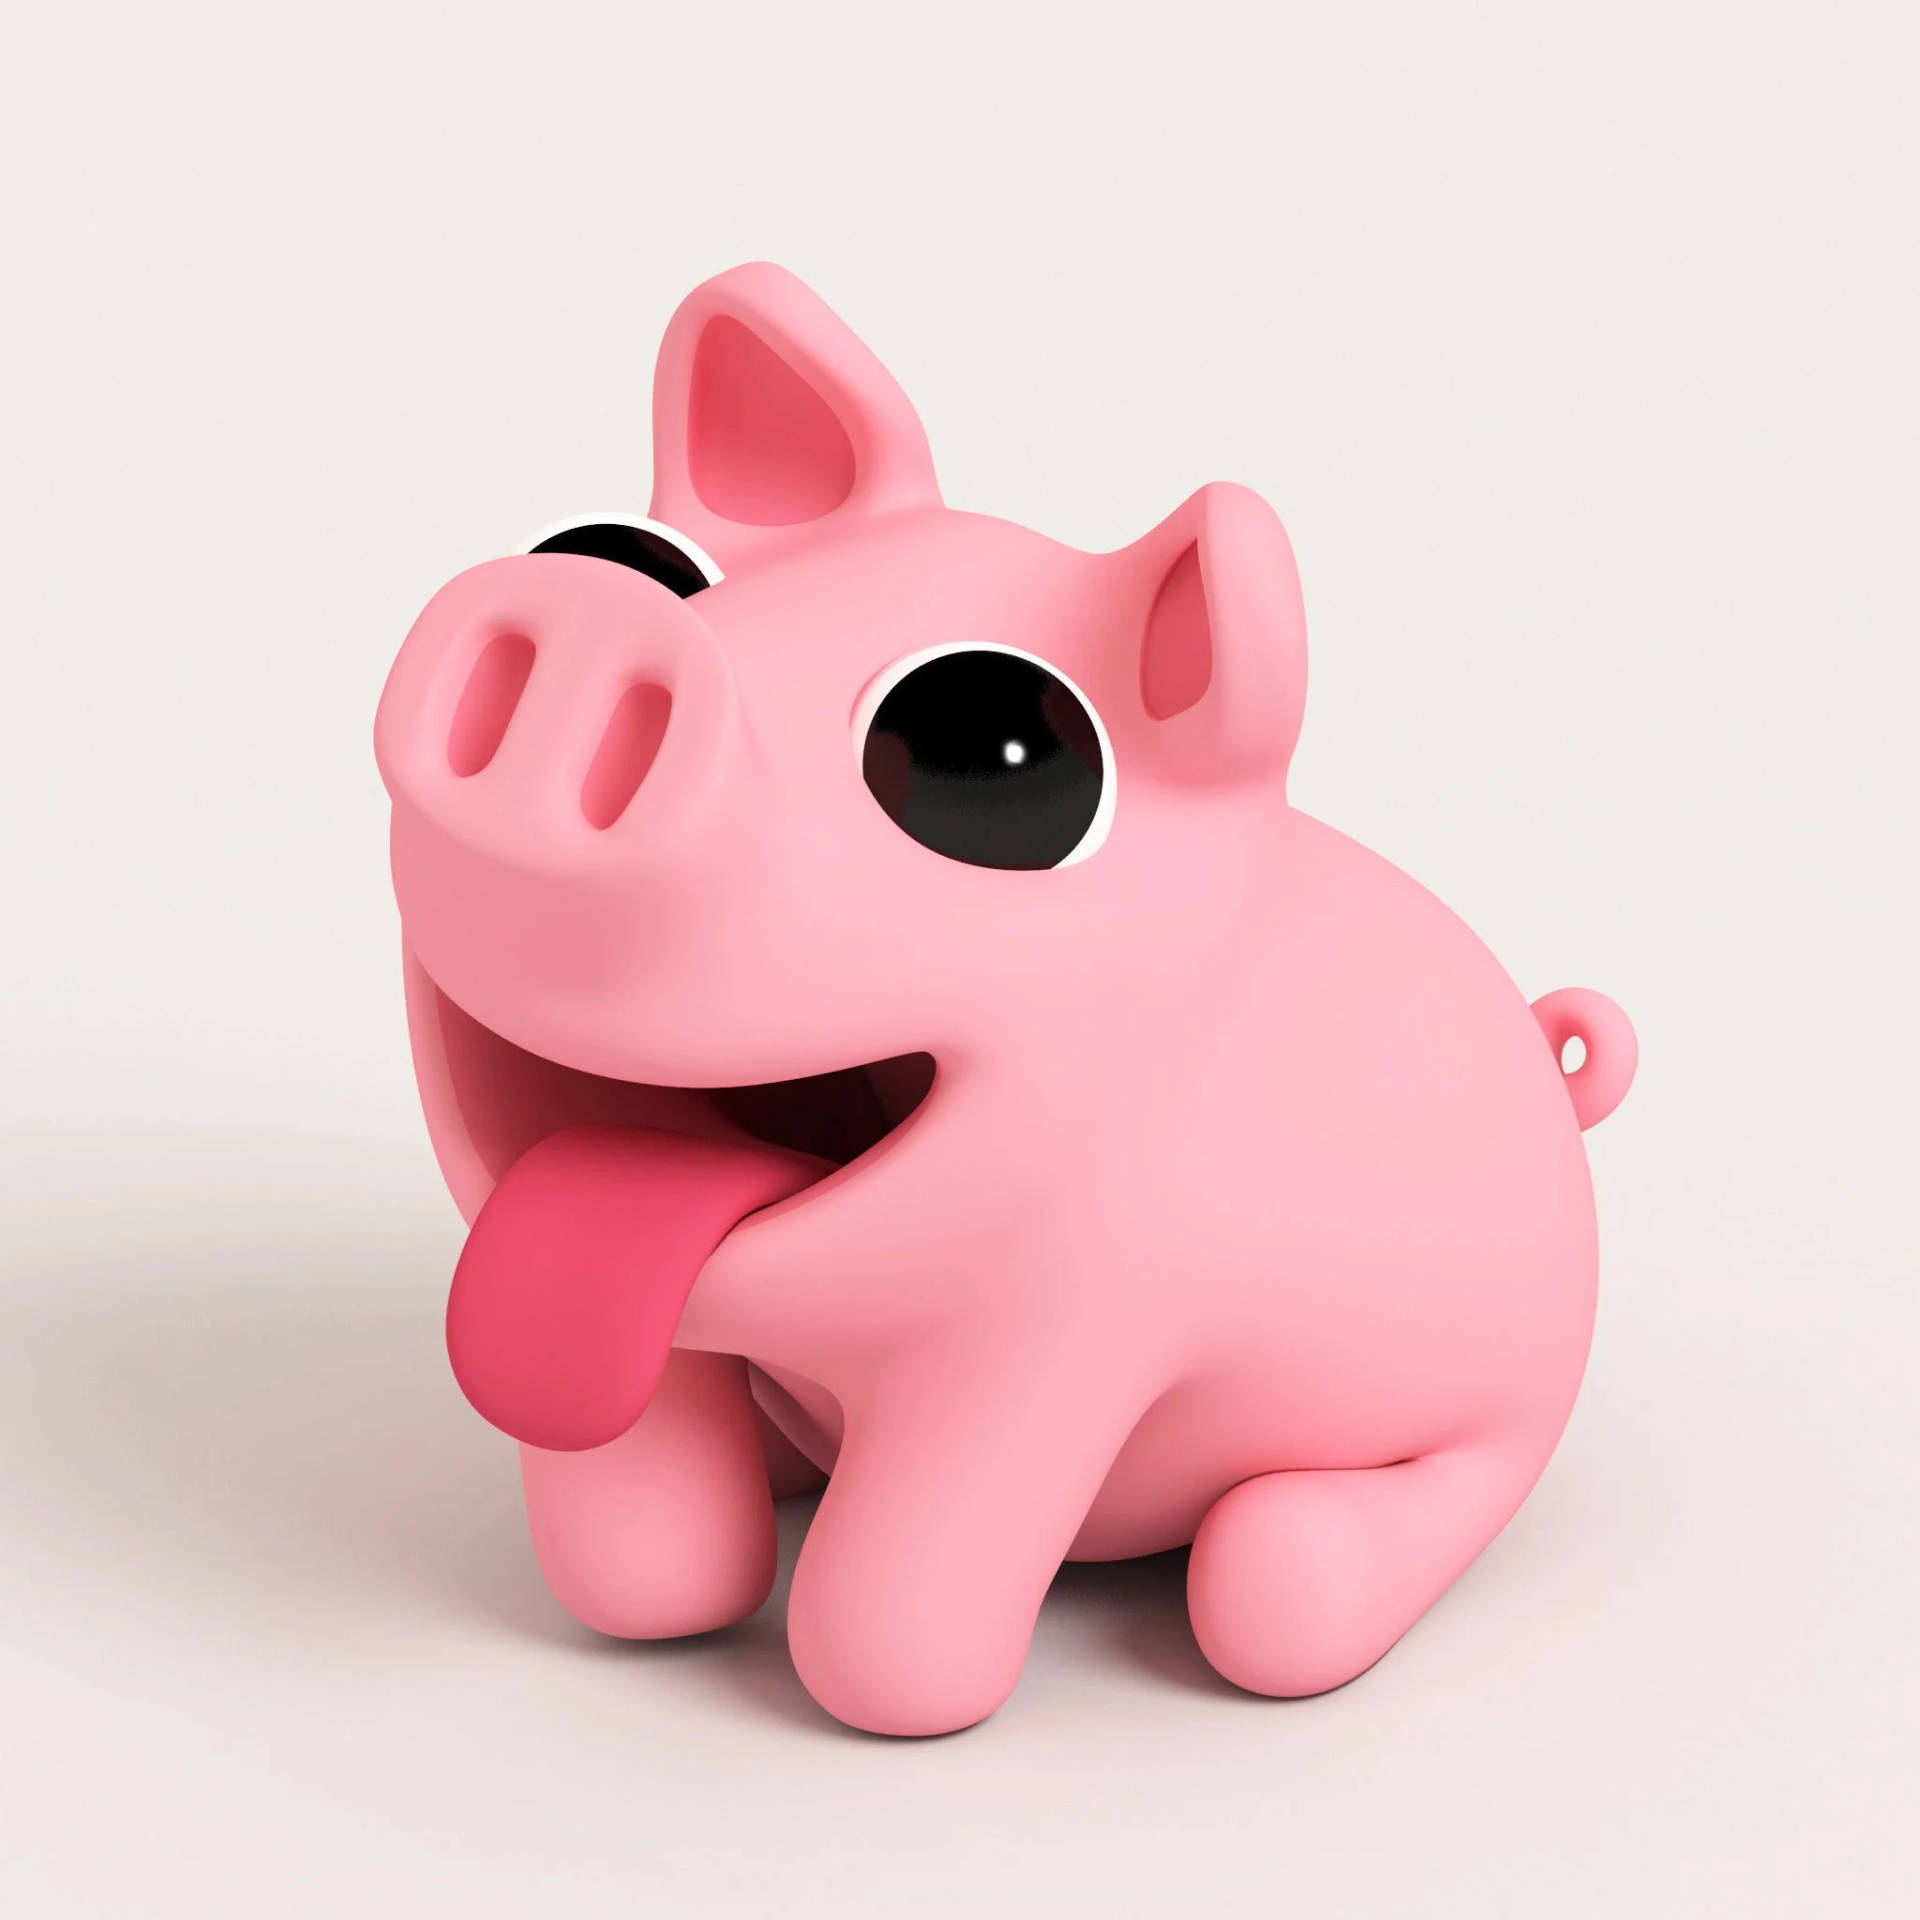 Adorable 3d Pig Illustration Background